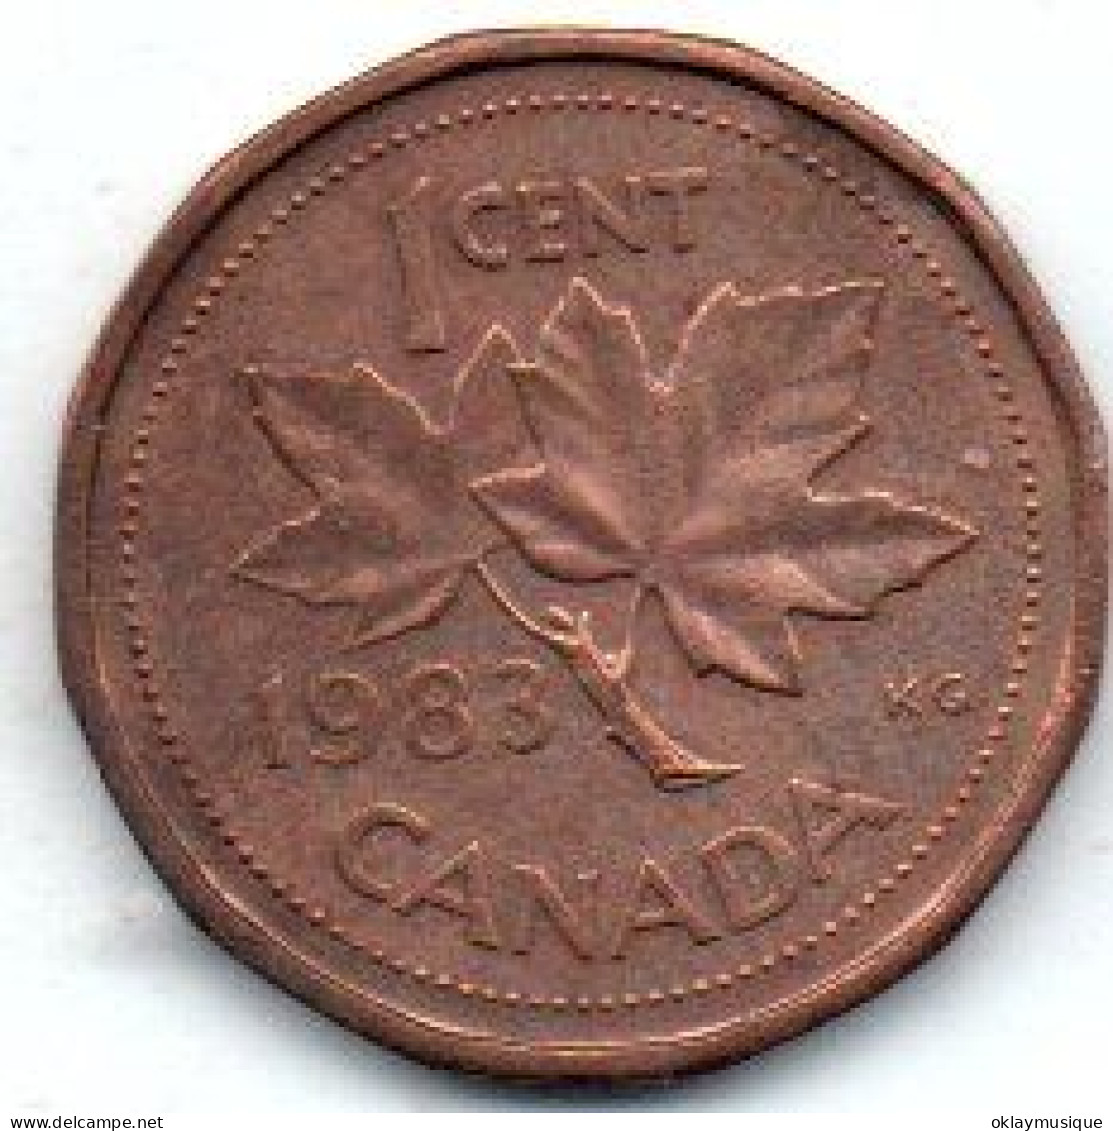 1 Cent 1983 - Canada